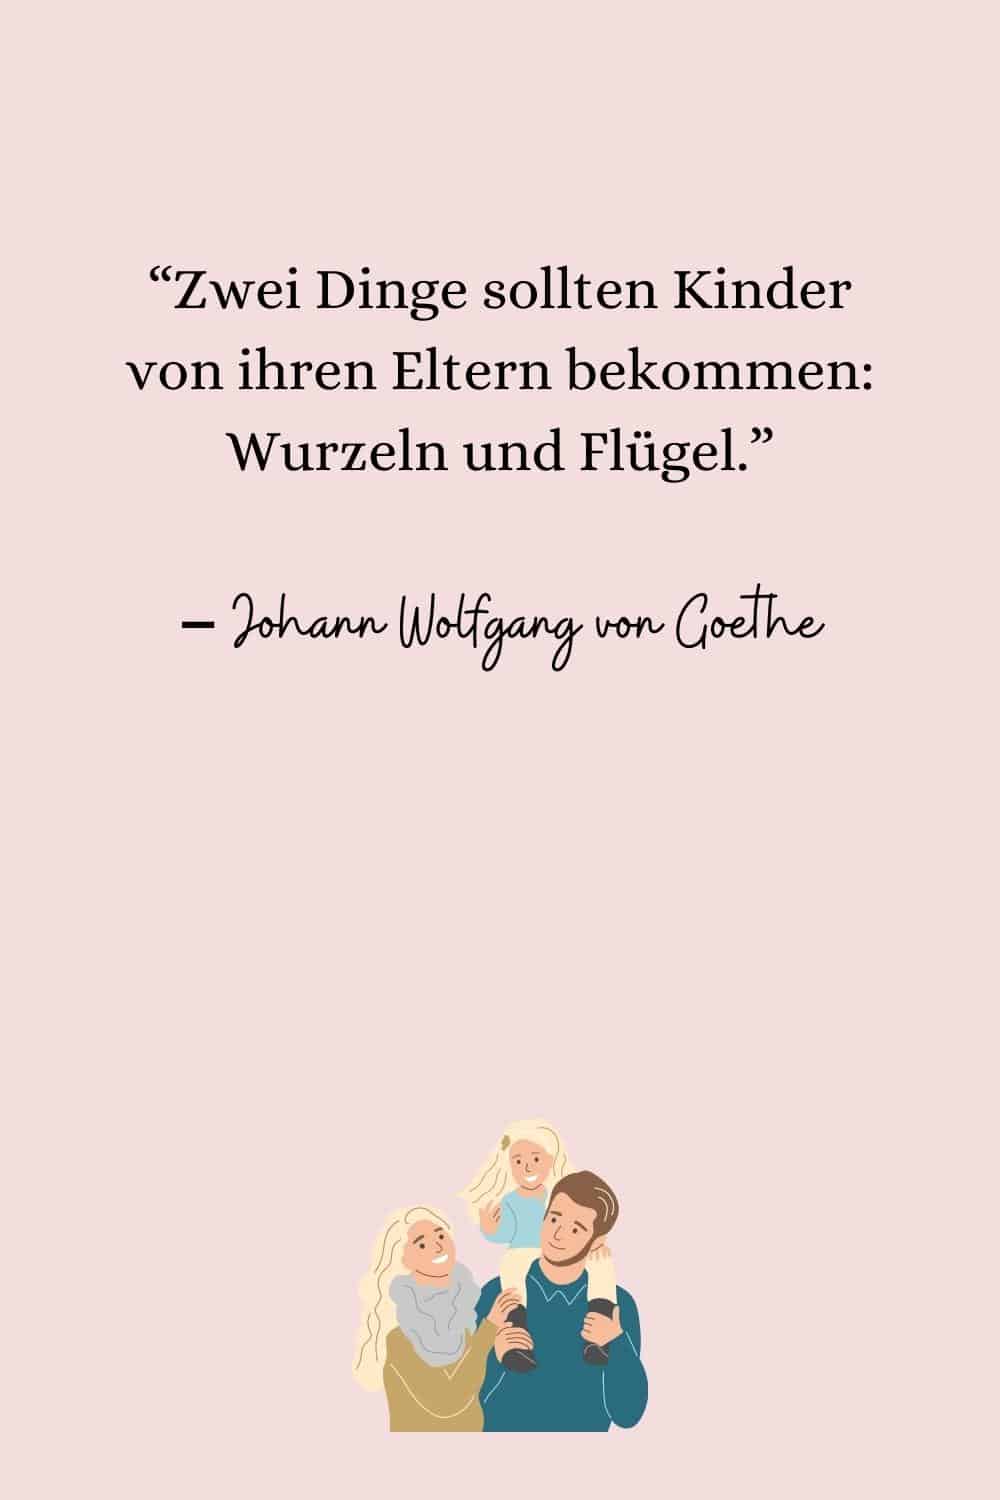 “Zwei Dinge sollten Kinder von ihren Eltern bekommen Wurzeln und Flügel.” – Johann Wolfgang von Goethe